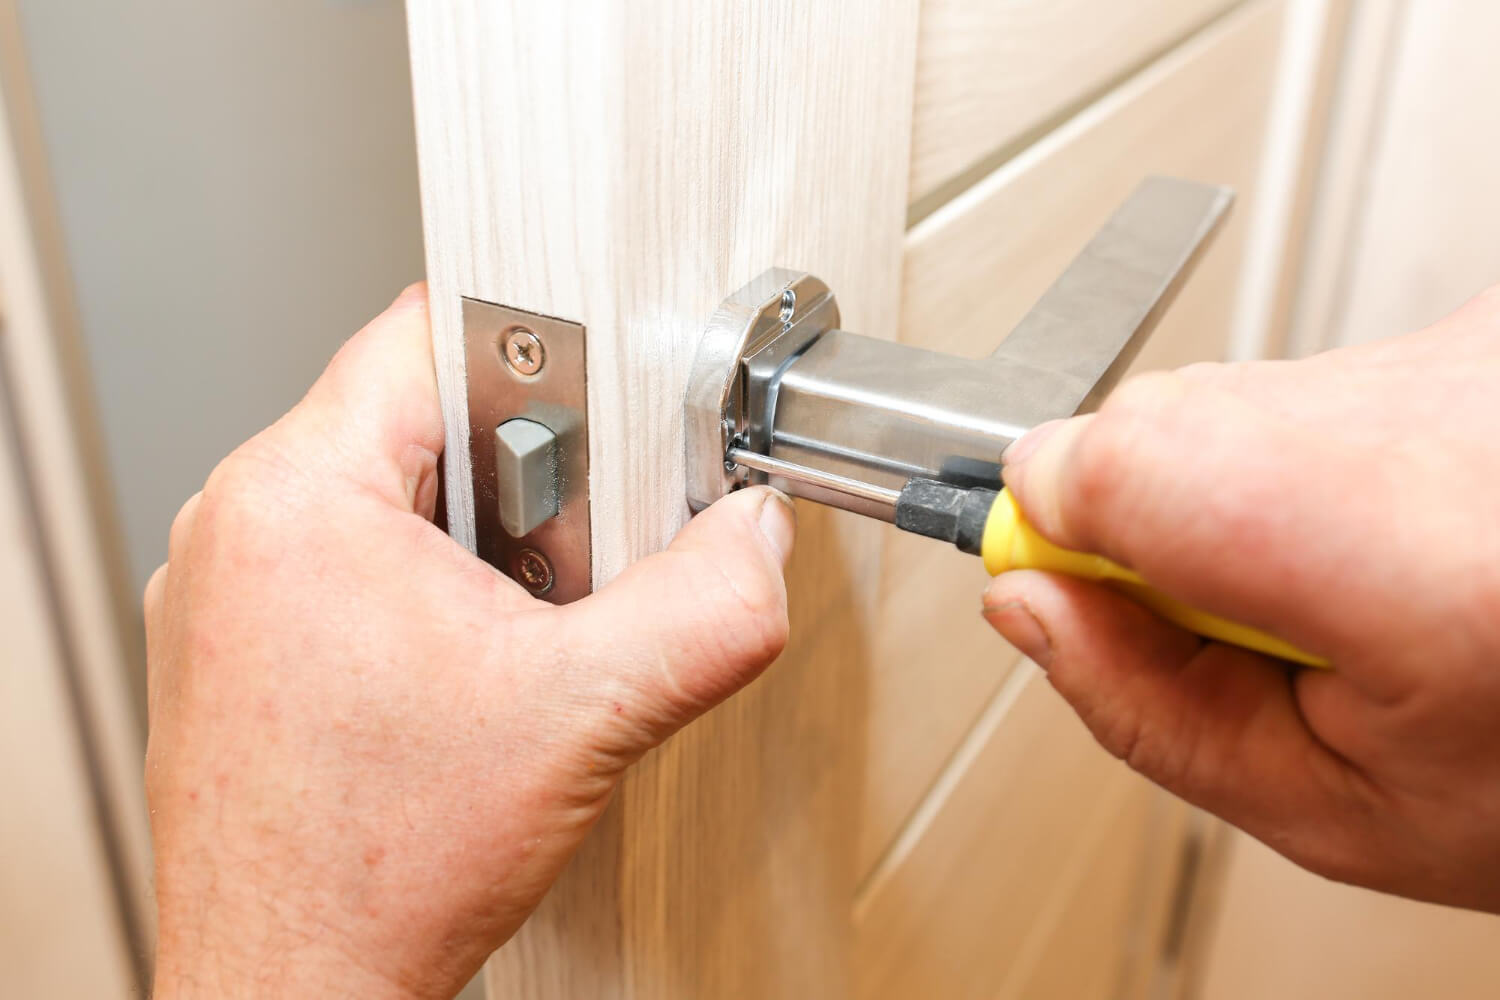 handyman installing door handle and lock on wooden internal door